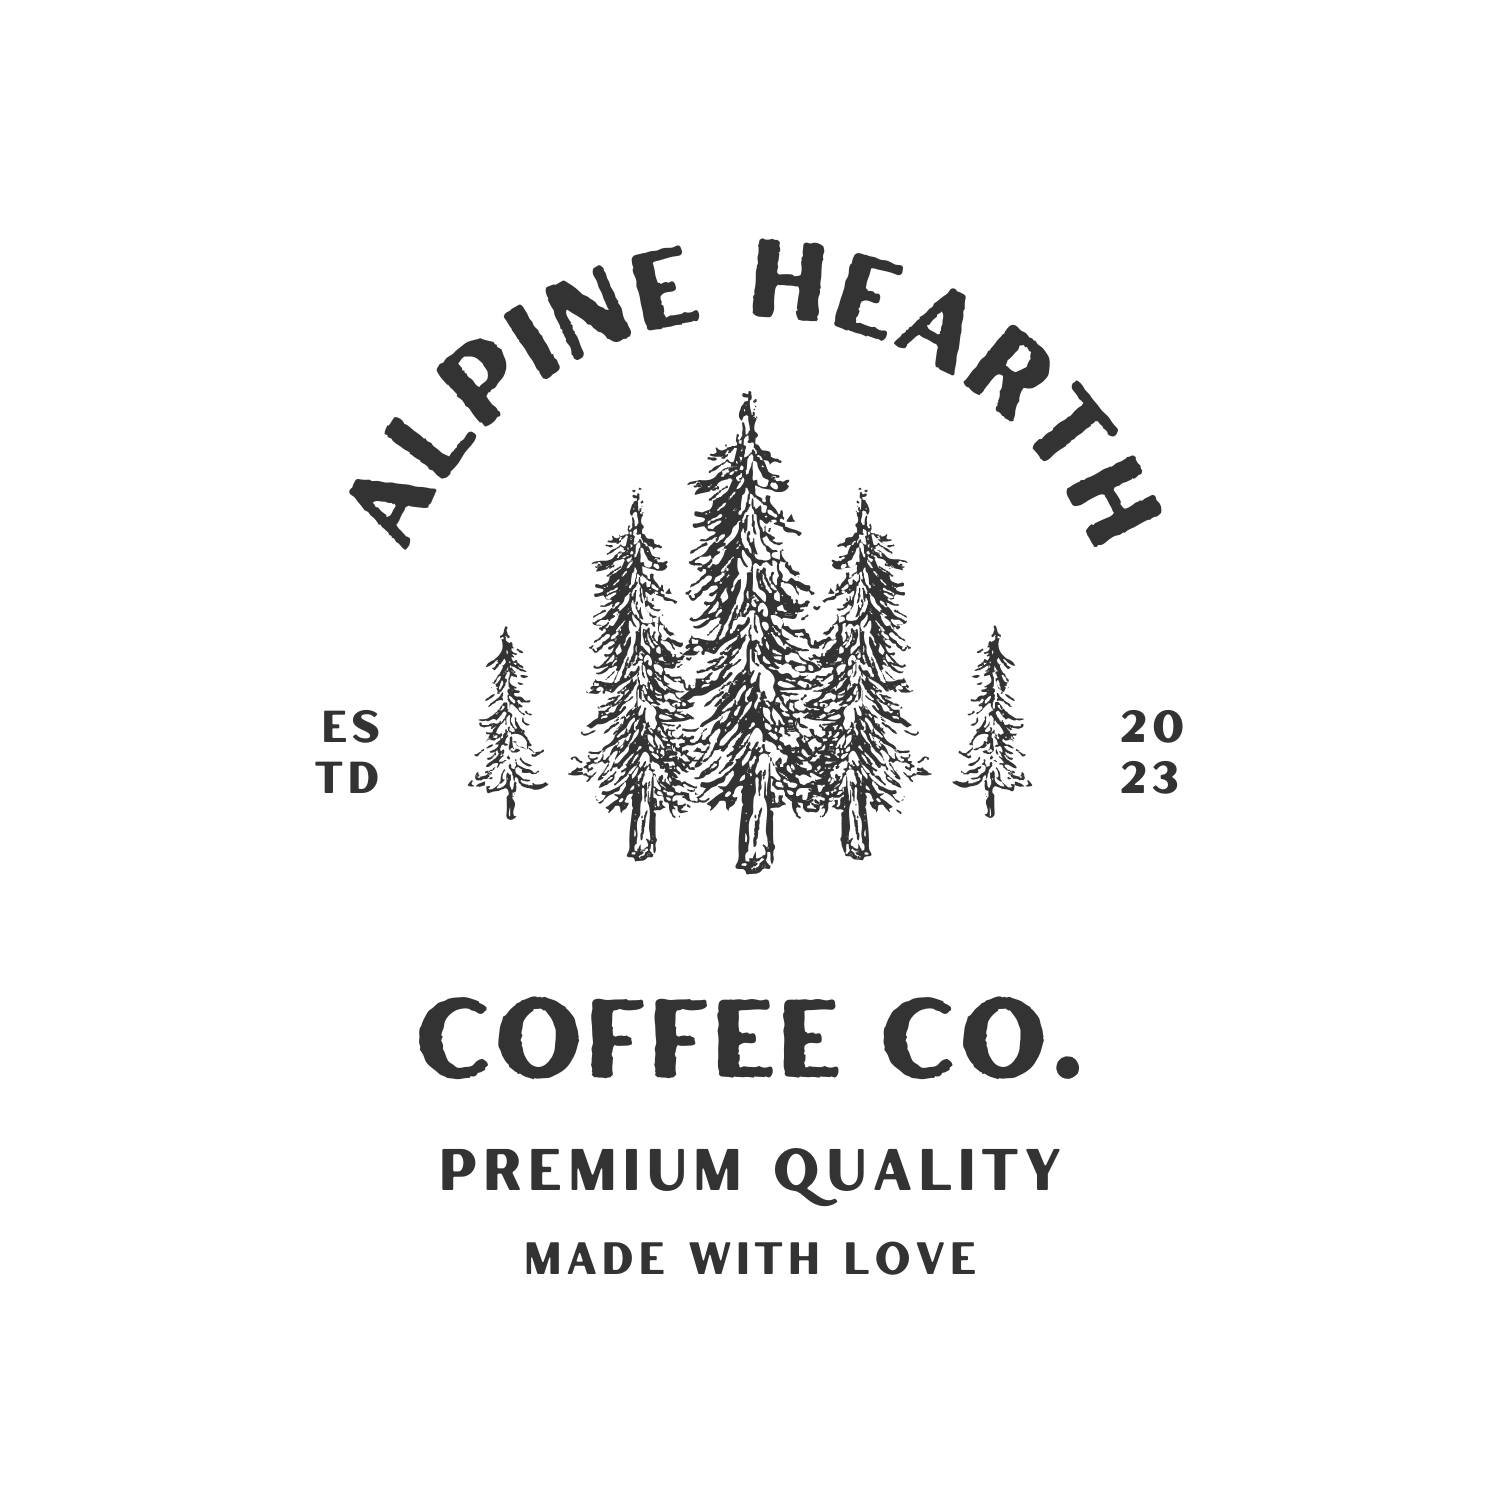 Alpine Hearth Coffee Co.